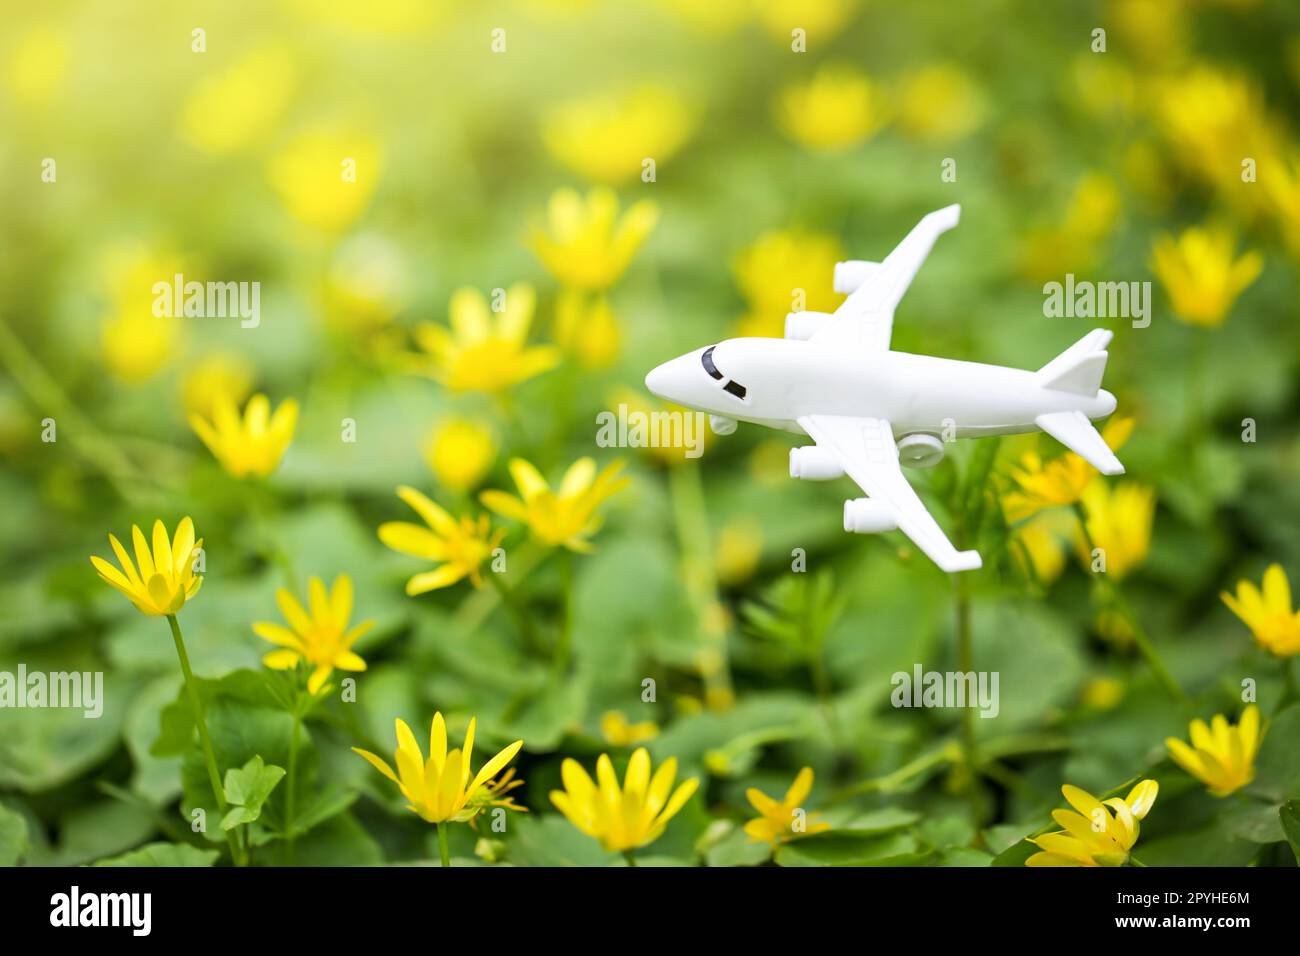 Nachhaltiger Treibstoff Für Die Luftfahrt. Weißes Flugzeugmodell auf Blume frisch grünen Blättern Hintergrund. Saubere und grüne Energie, Biokraftstoff für die Luftfahrtindustrie. Stockfoto